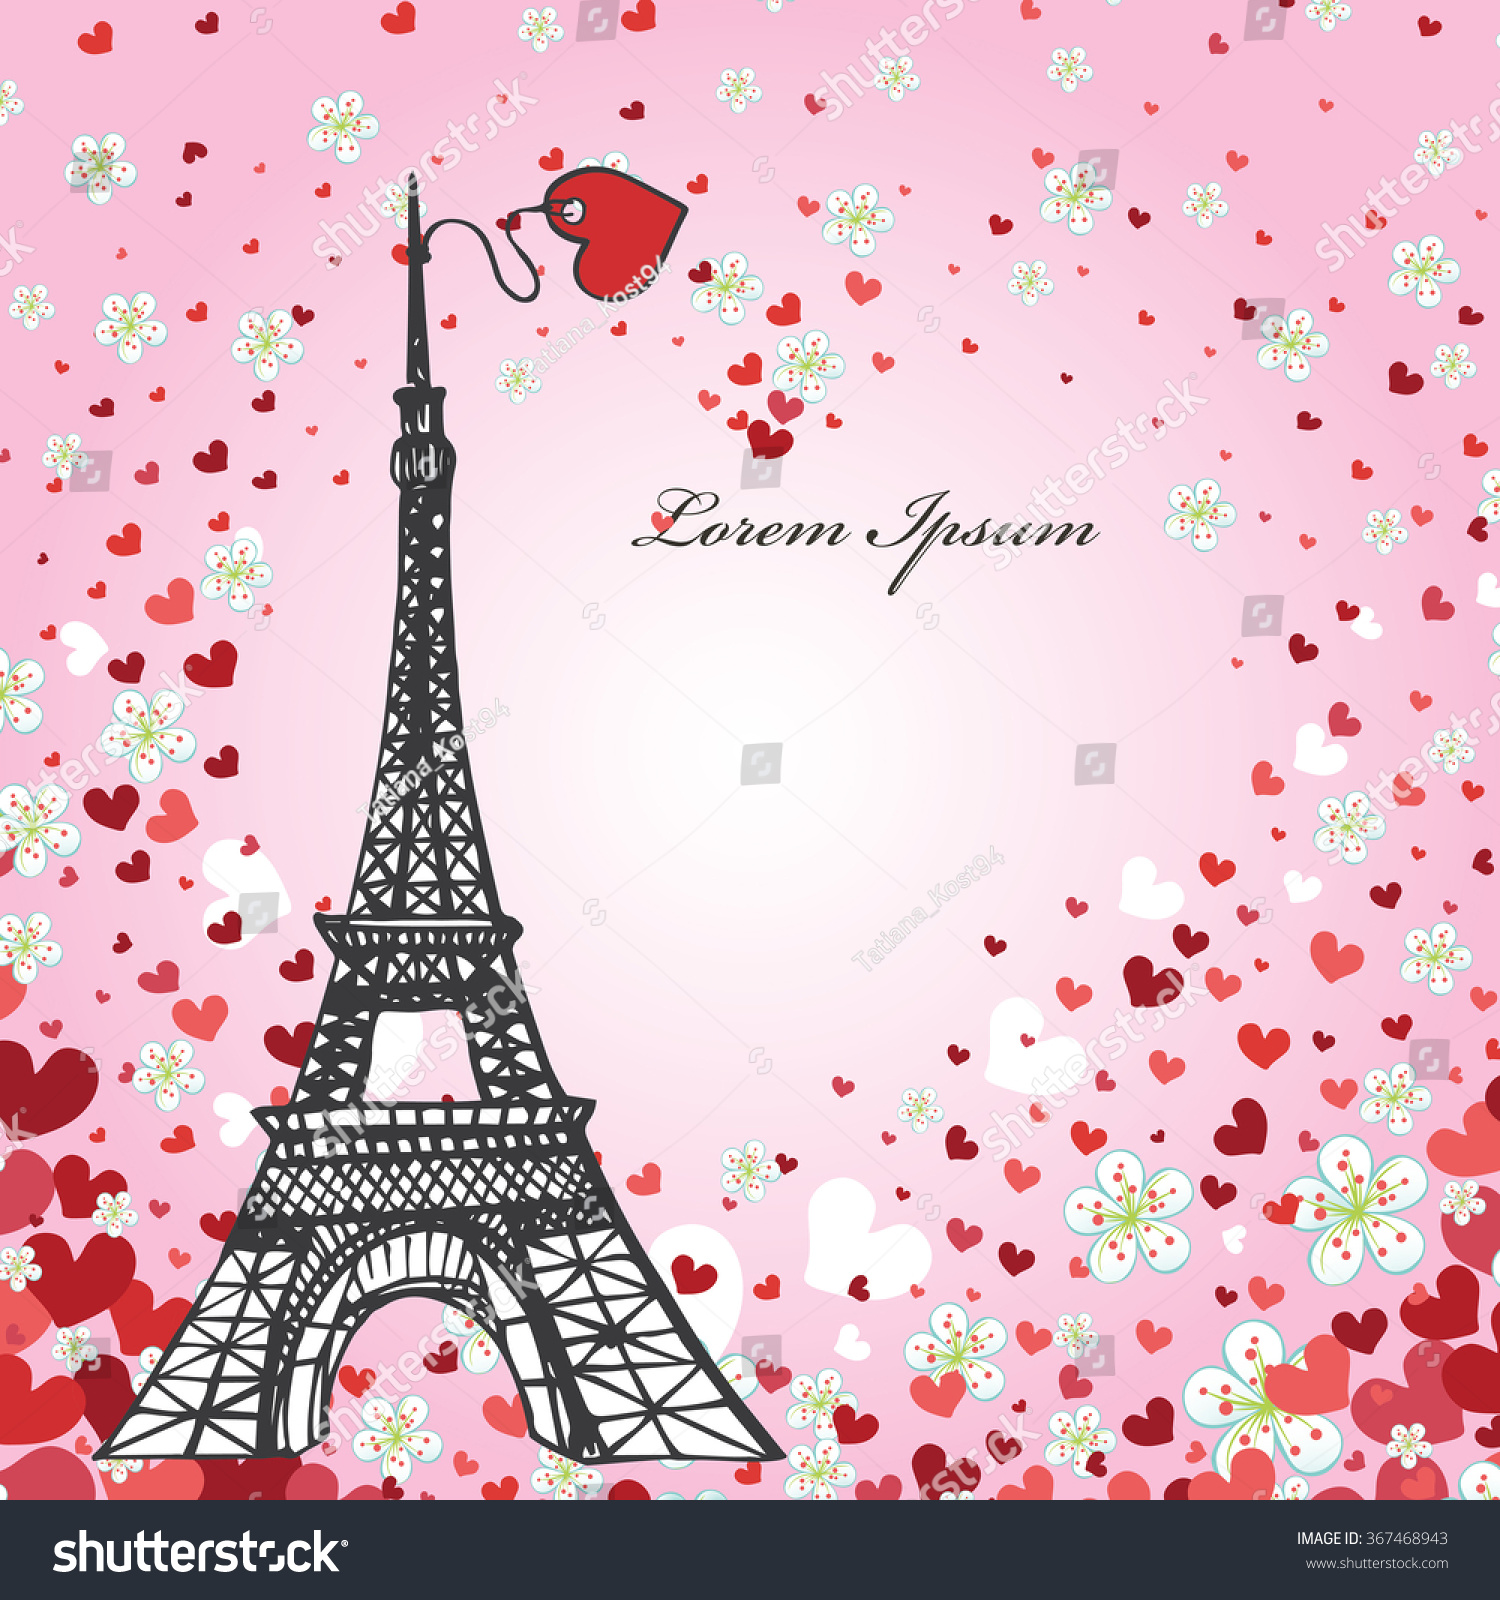 Paris Love Background Vintage Valentine Wedding Design Stock